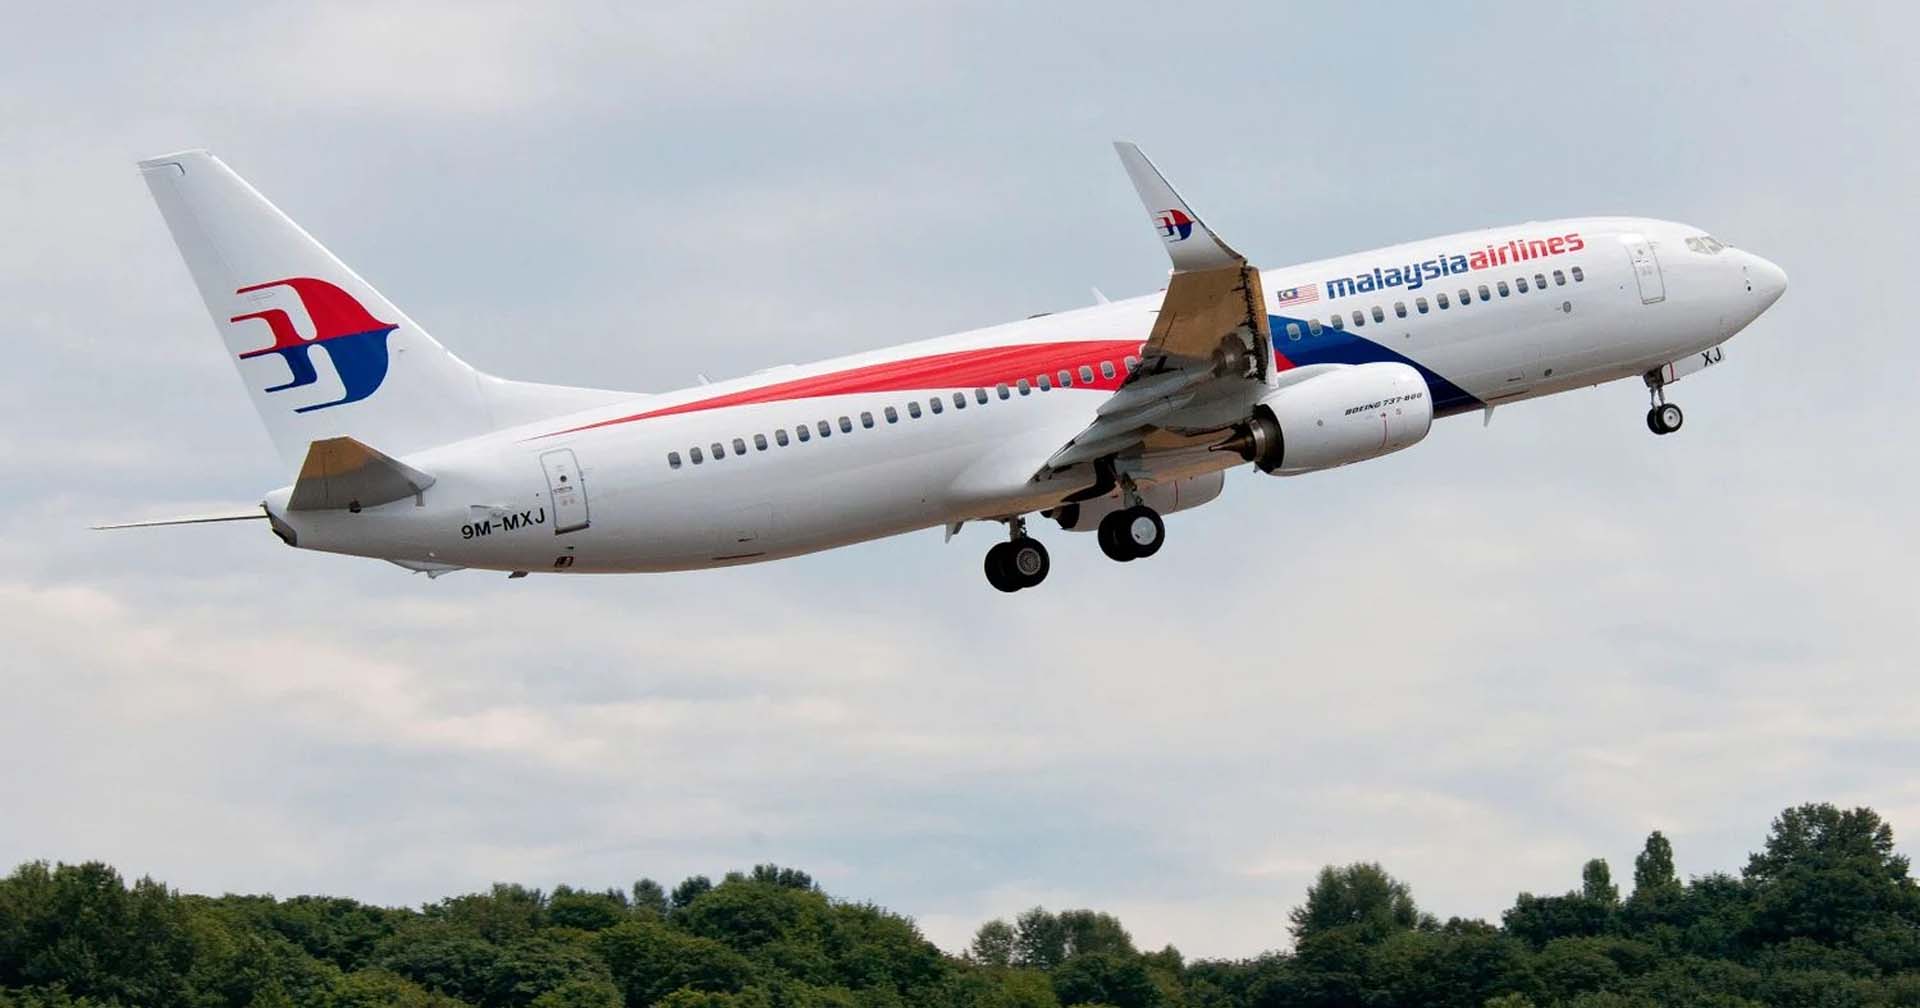 ระทึกอีก! โบอิ้ง 737-800 ของมาเลเซียดิ่งฮวบ ก่อนนักบินนำเครื่องลงจอดปลอดภัย